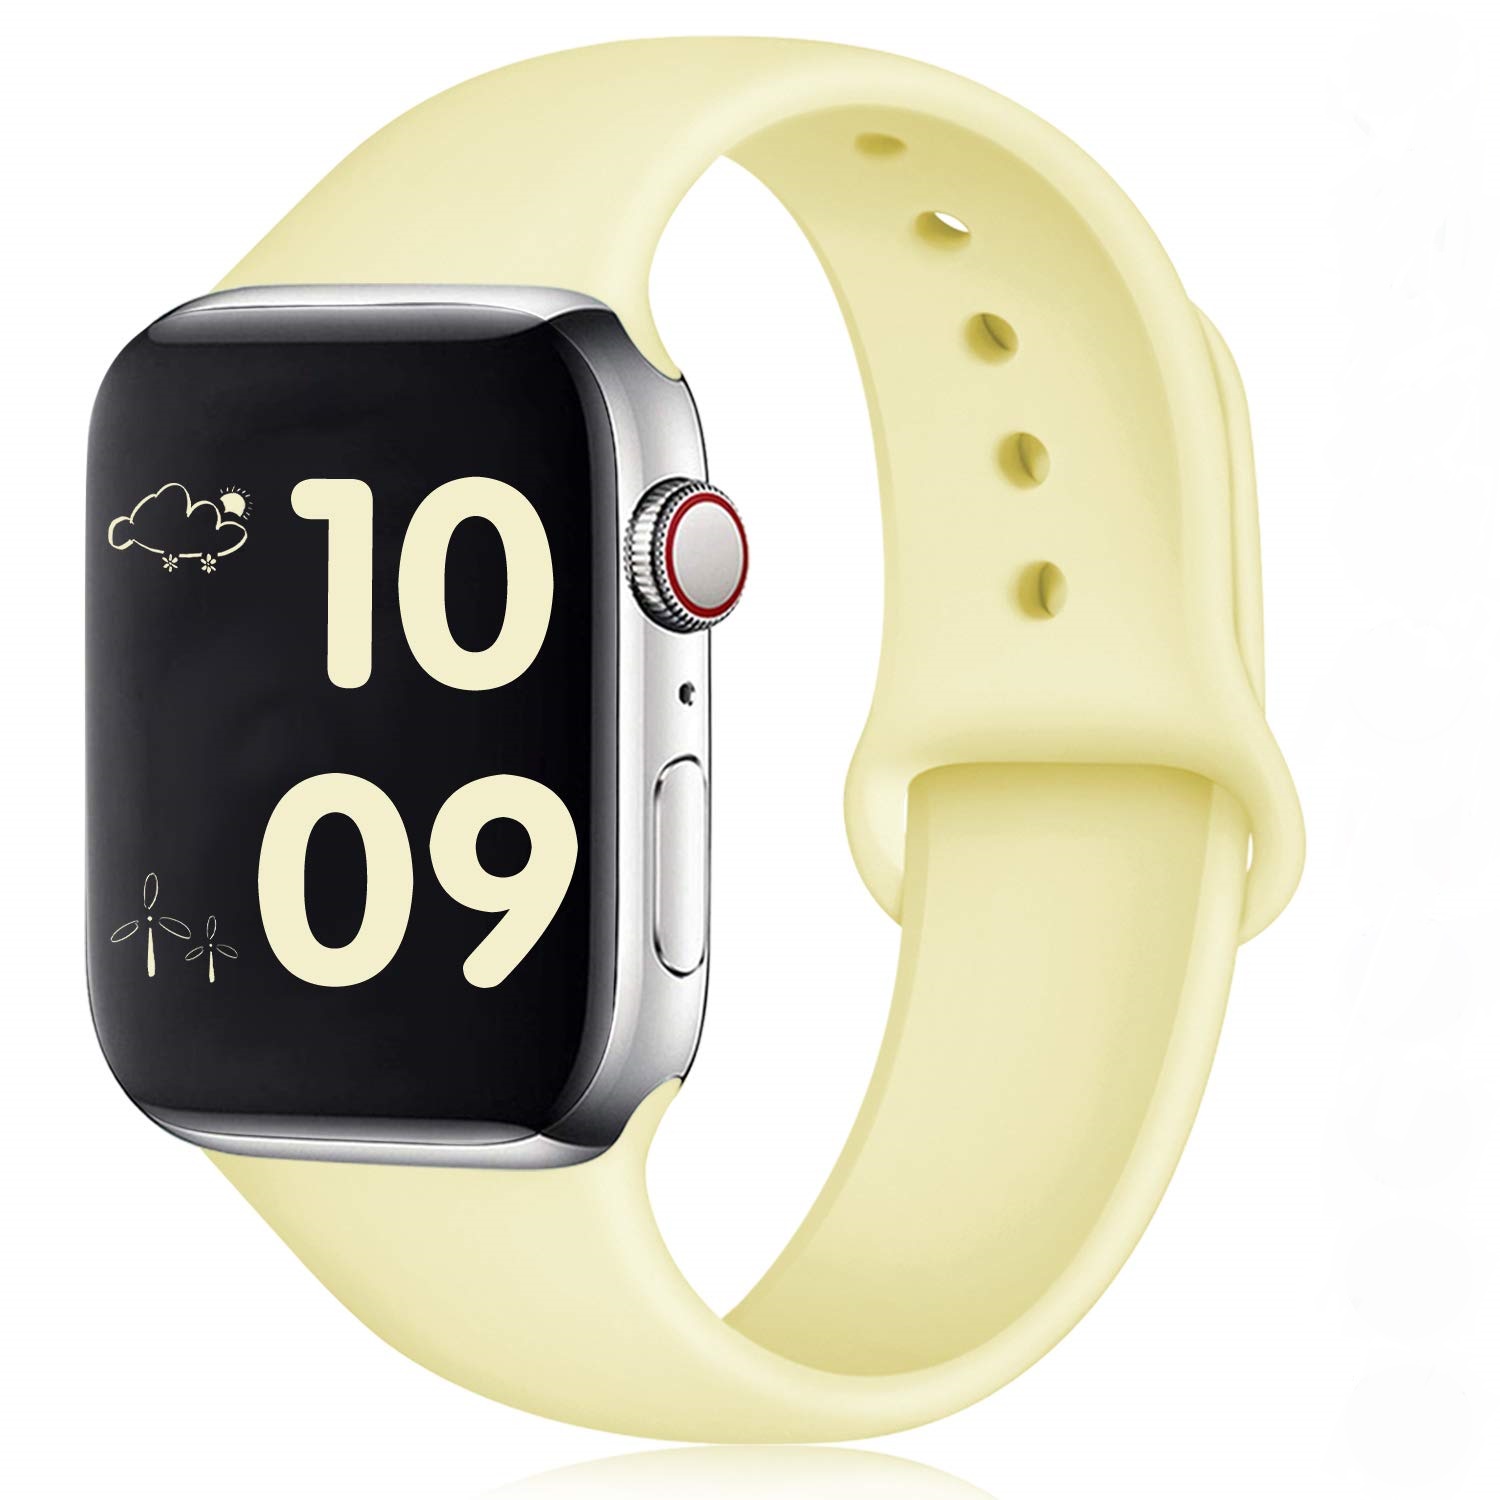 Tổng hợp Apple Watch Series 4 Màu Hồng giá rẻ, bán chạy tháng 3 